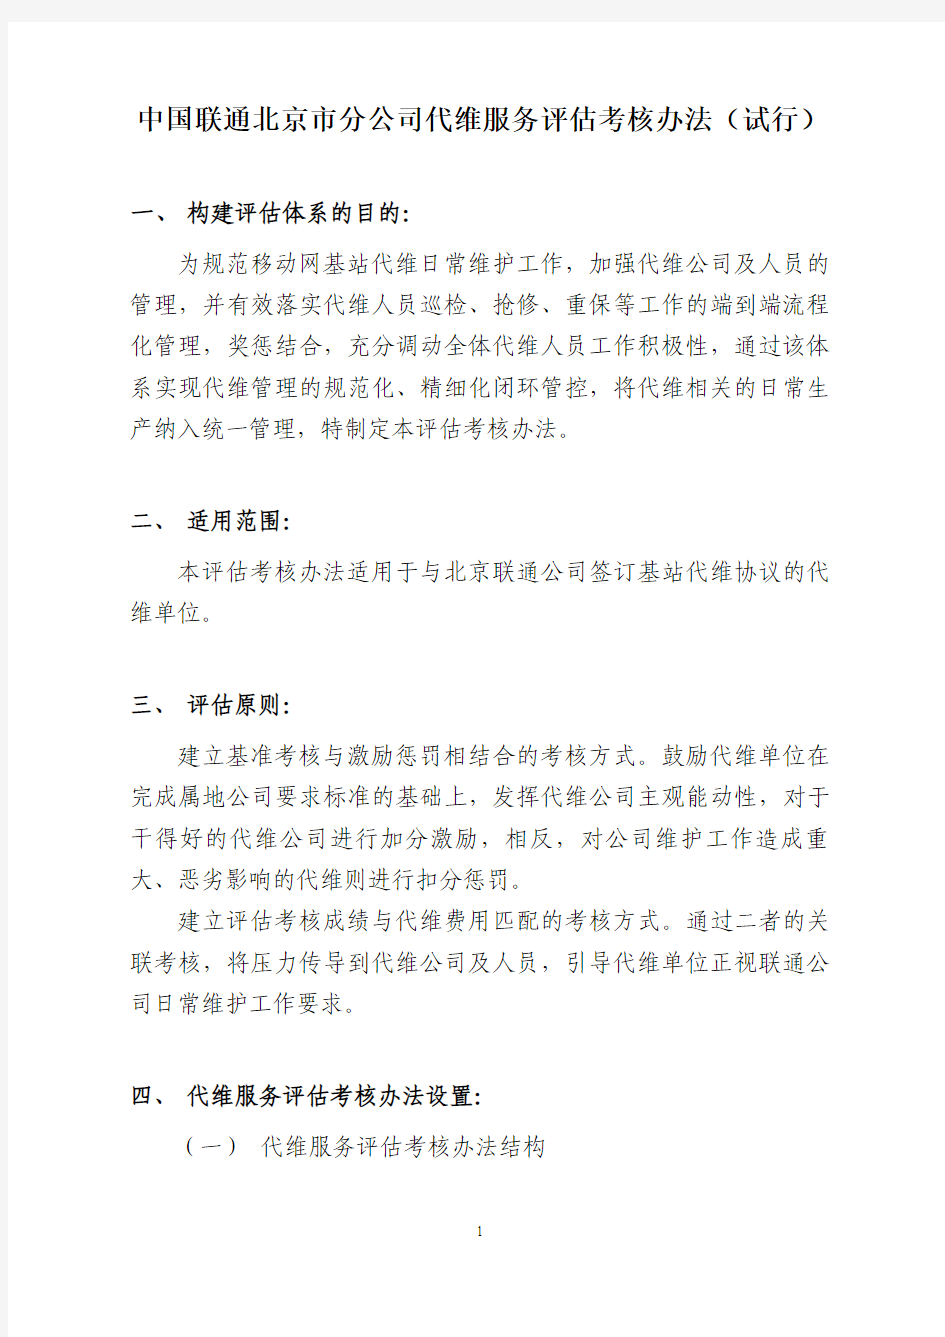 中国联通北京市分公司代维服务评估考核办法